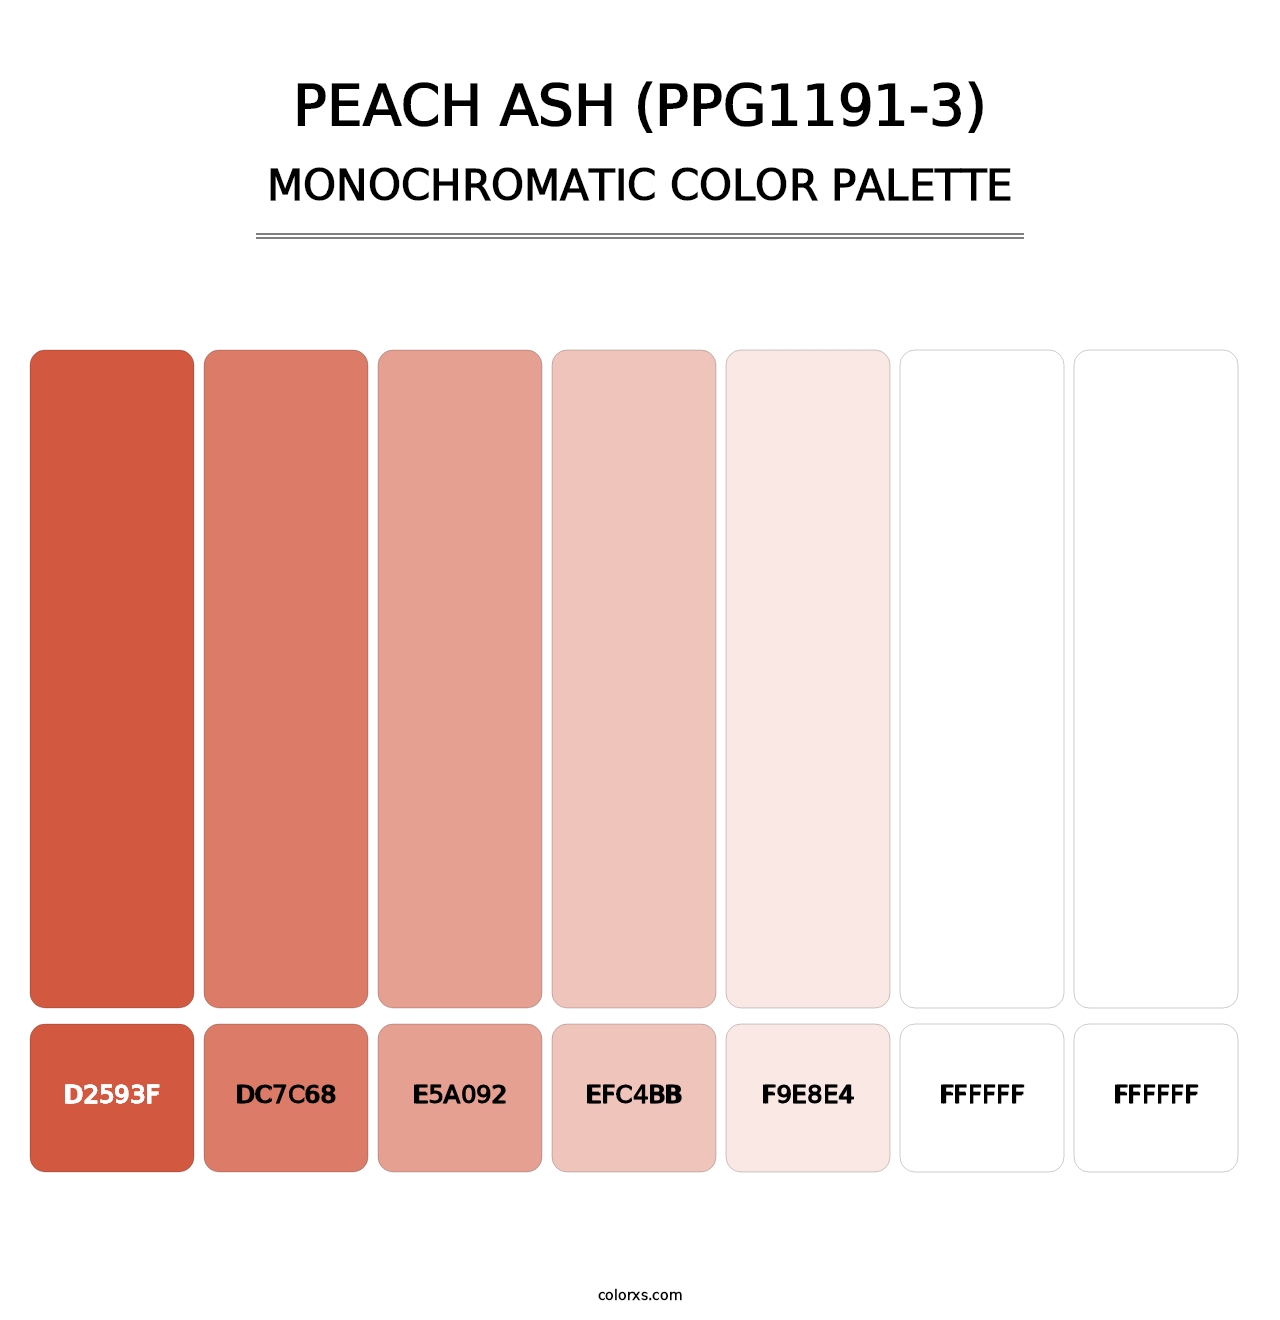 Peach Ash (PPG1191-3) - Monochromatic Color Palette